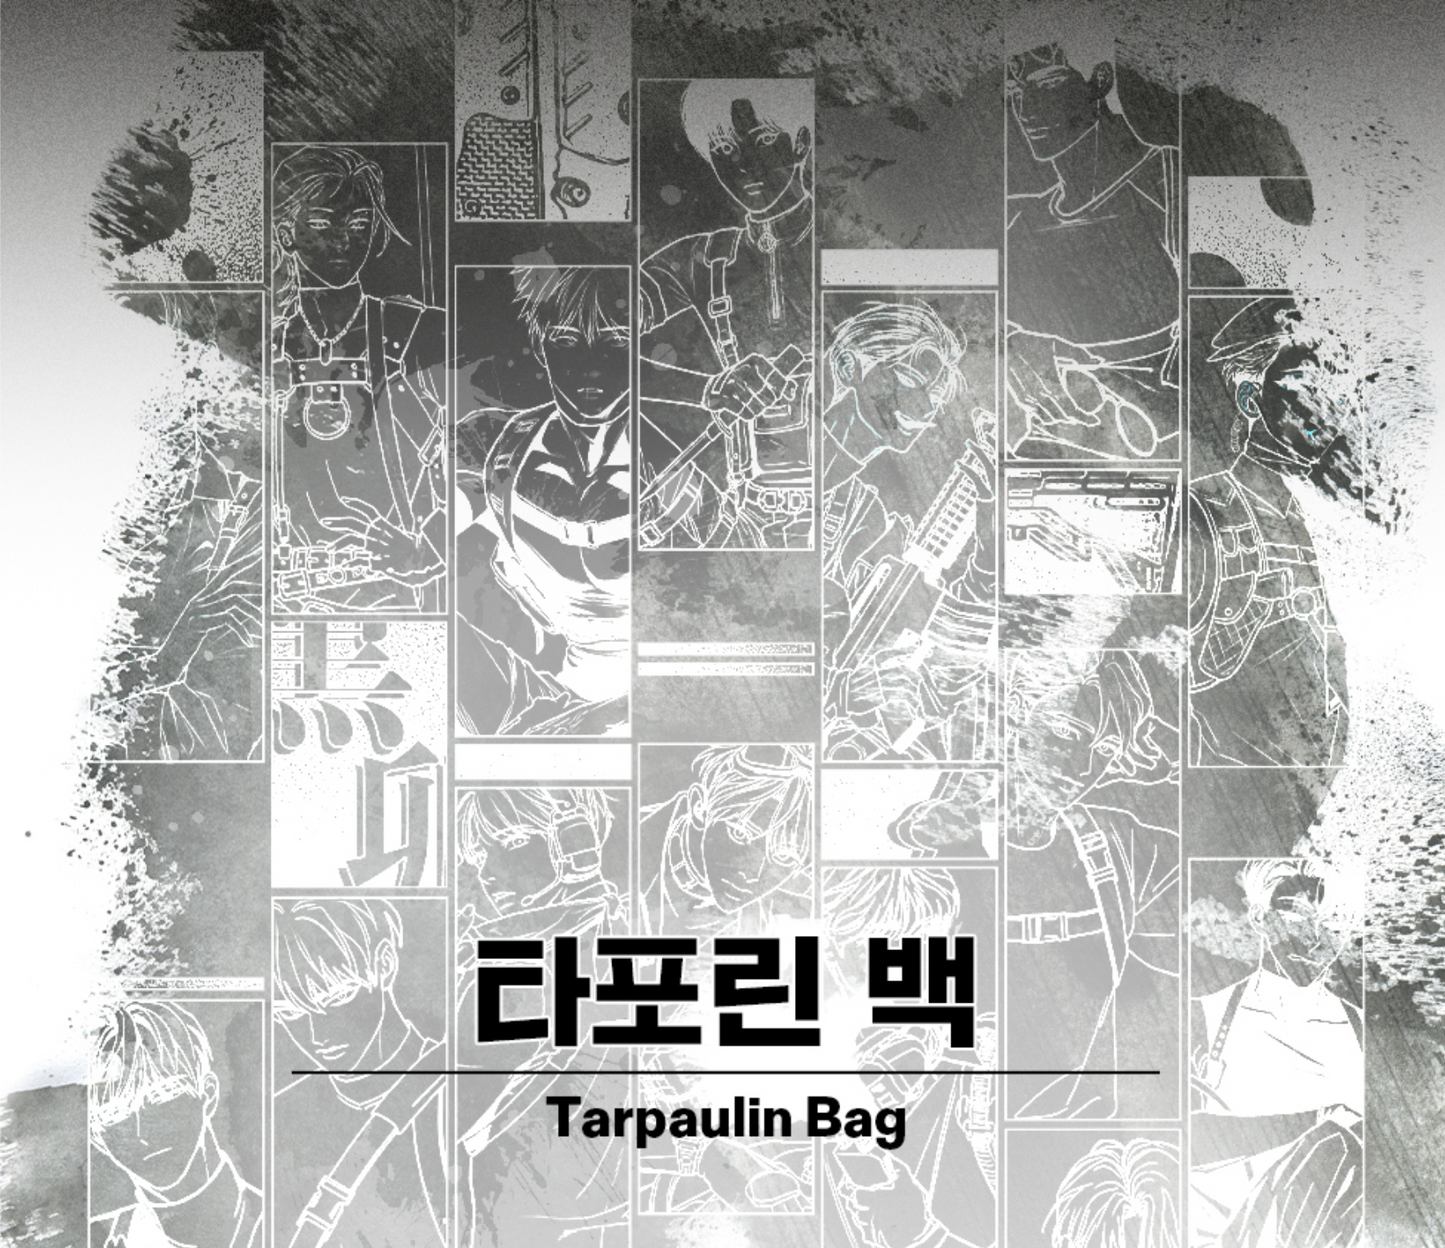 B.W.R.T(Black Tiger & Rabbit) : Black Rabbit Tarpaurin bag, The Ghost's Nocturne, Pearl boy, Full volume, Jinx